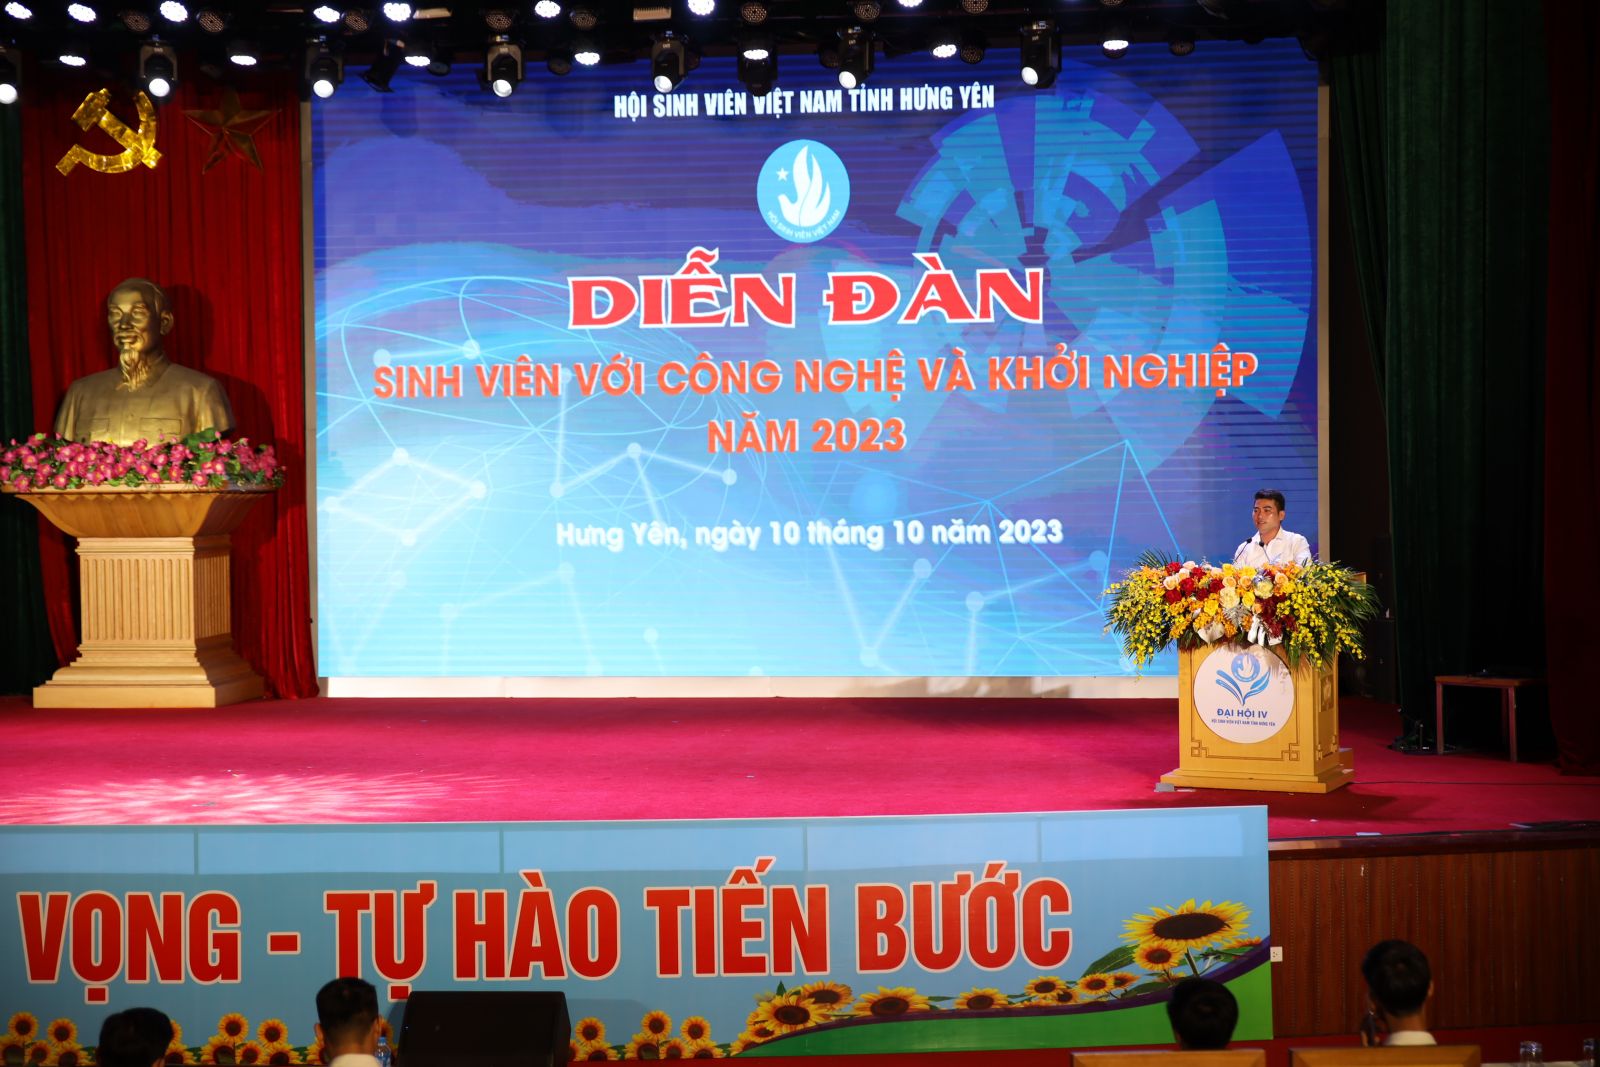 Liên hoan văn nghệ chào mừng Đại hội lần thứ IV Hội Sinh viên Việt Nam tỉnh Hưng Yên và Diễn đàn: “Sinh viên với công nghệ và khởi nghiệp”.